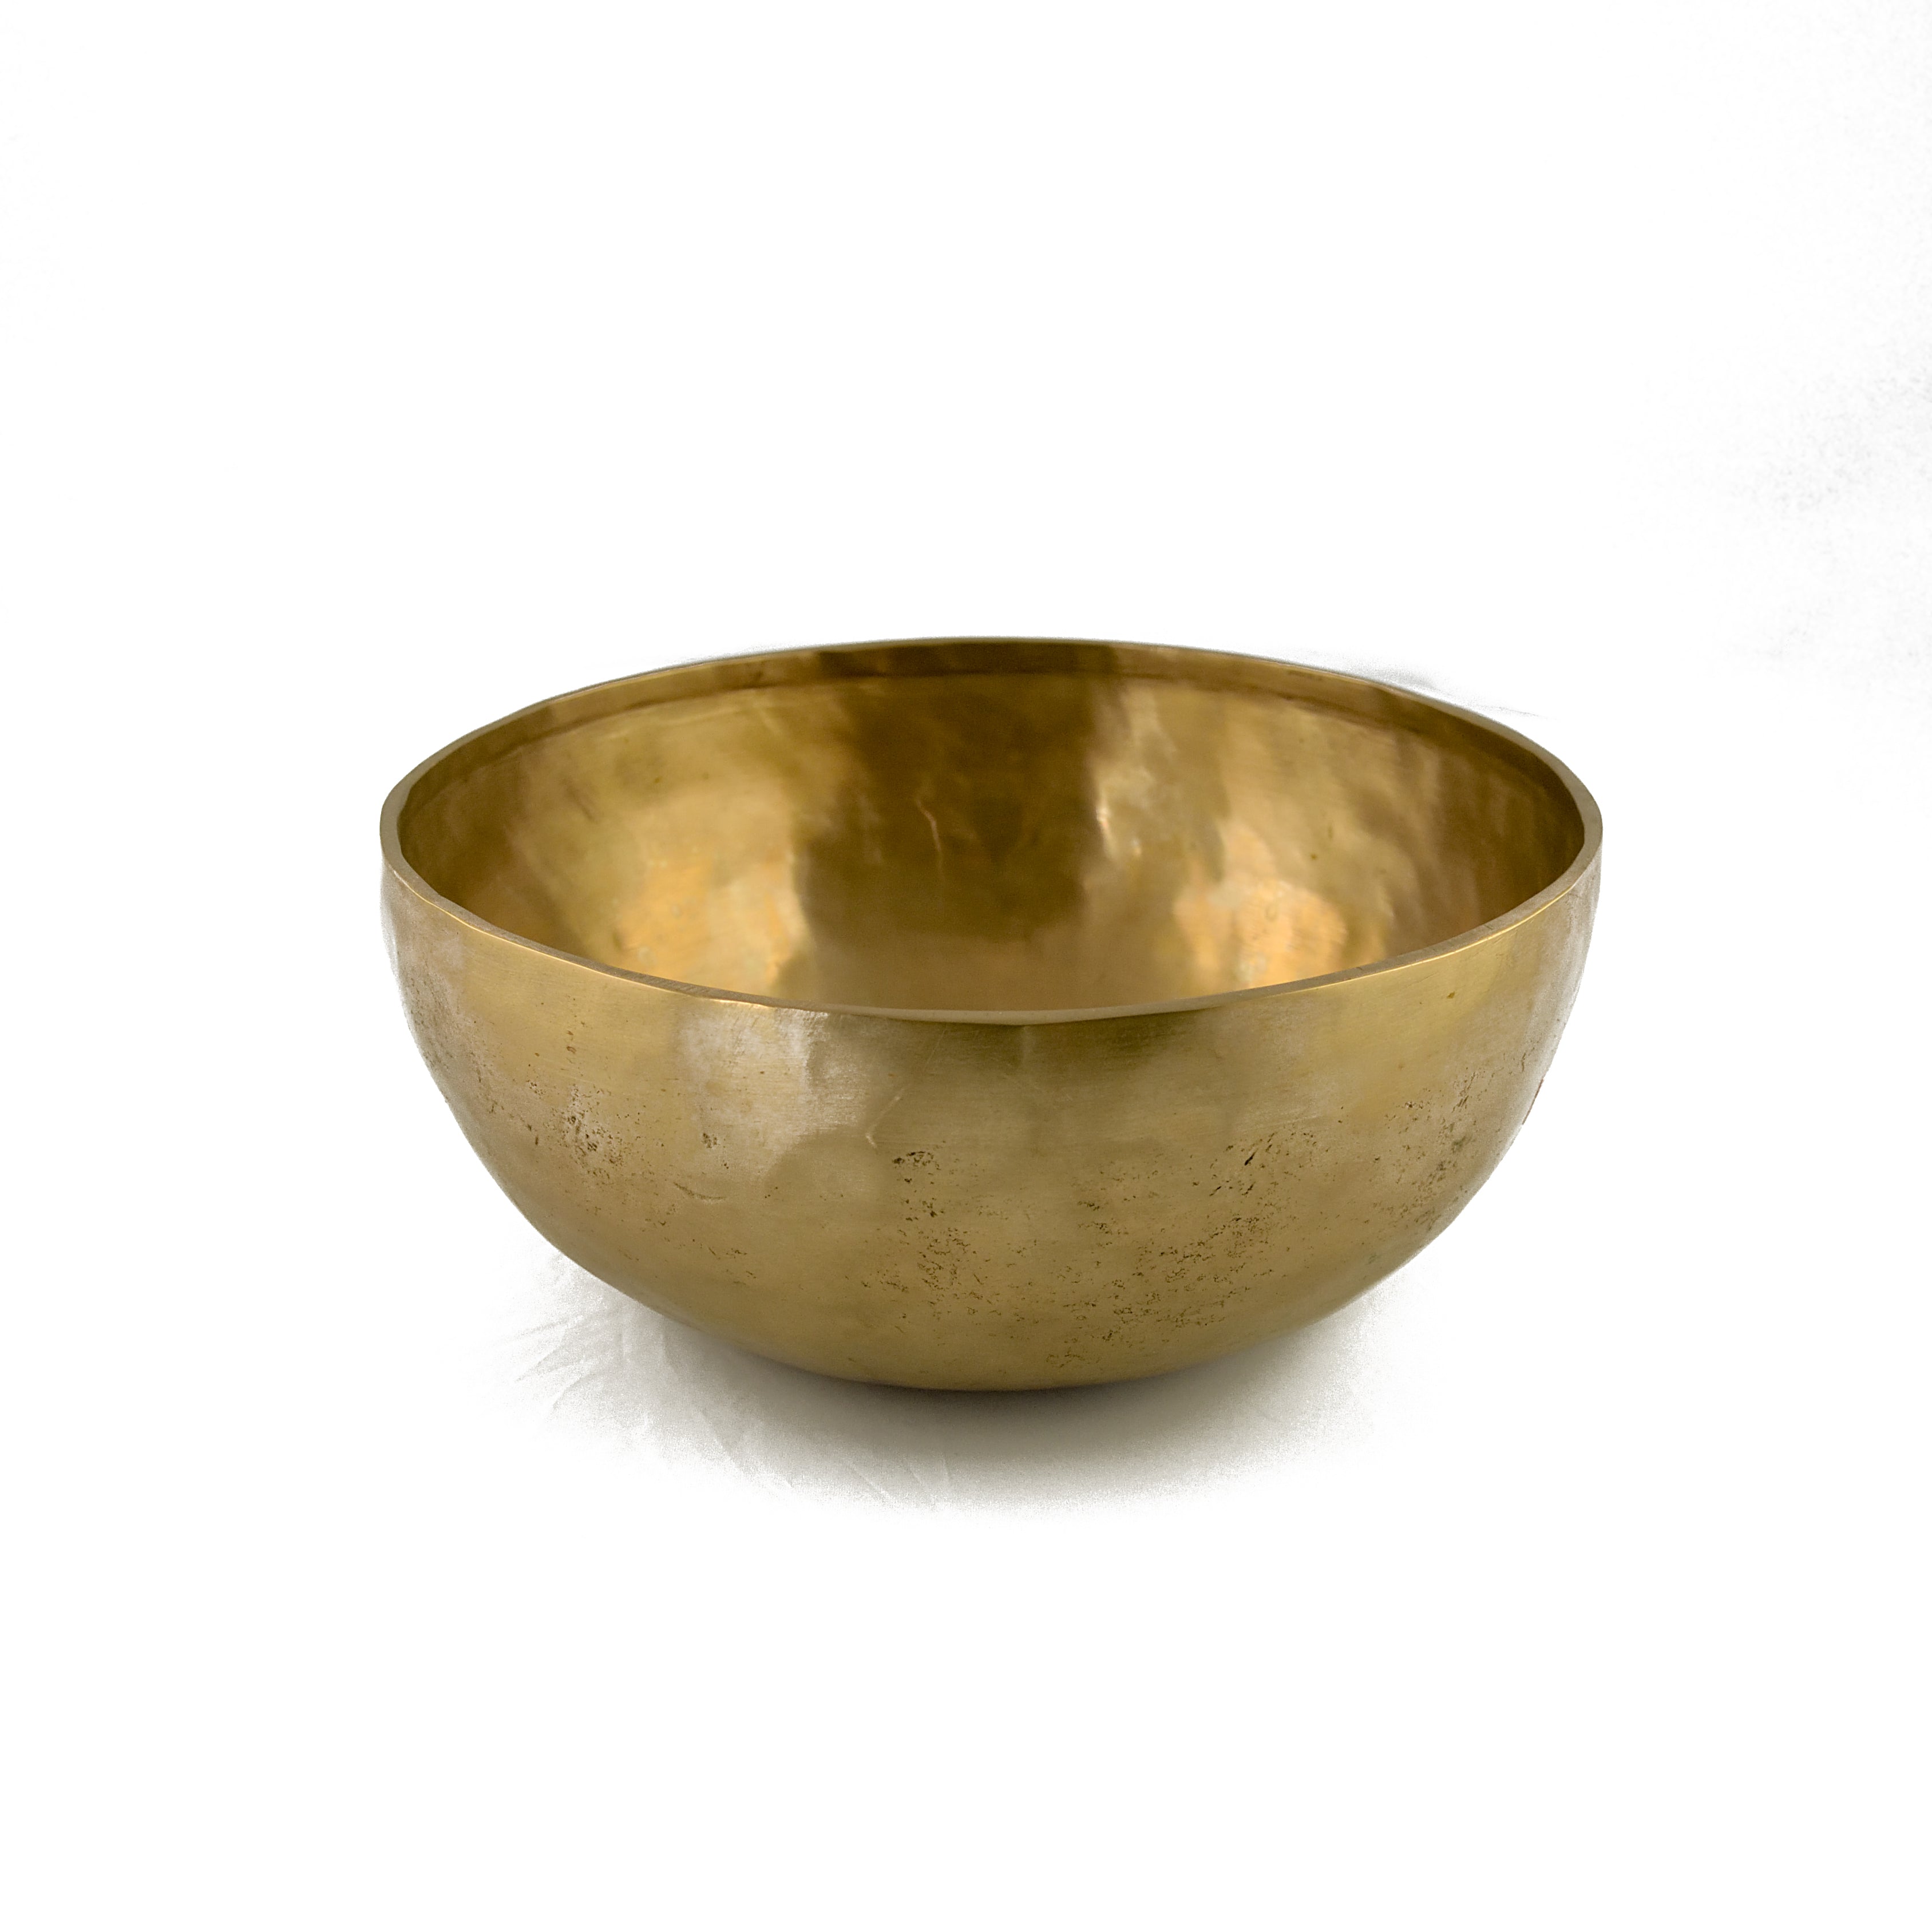 Tibetan Singing Bowl (Extra Large) 1800-2000 gm